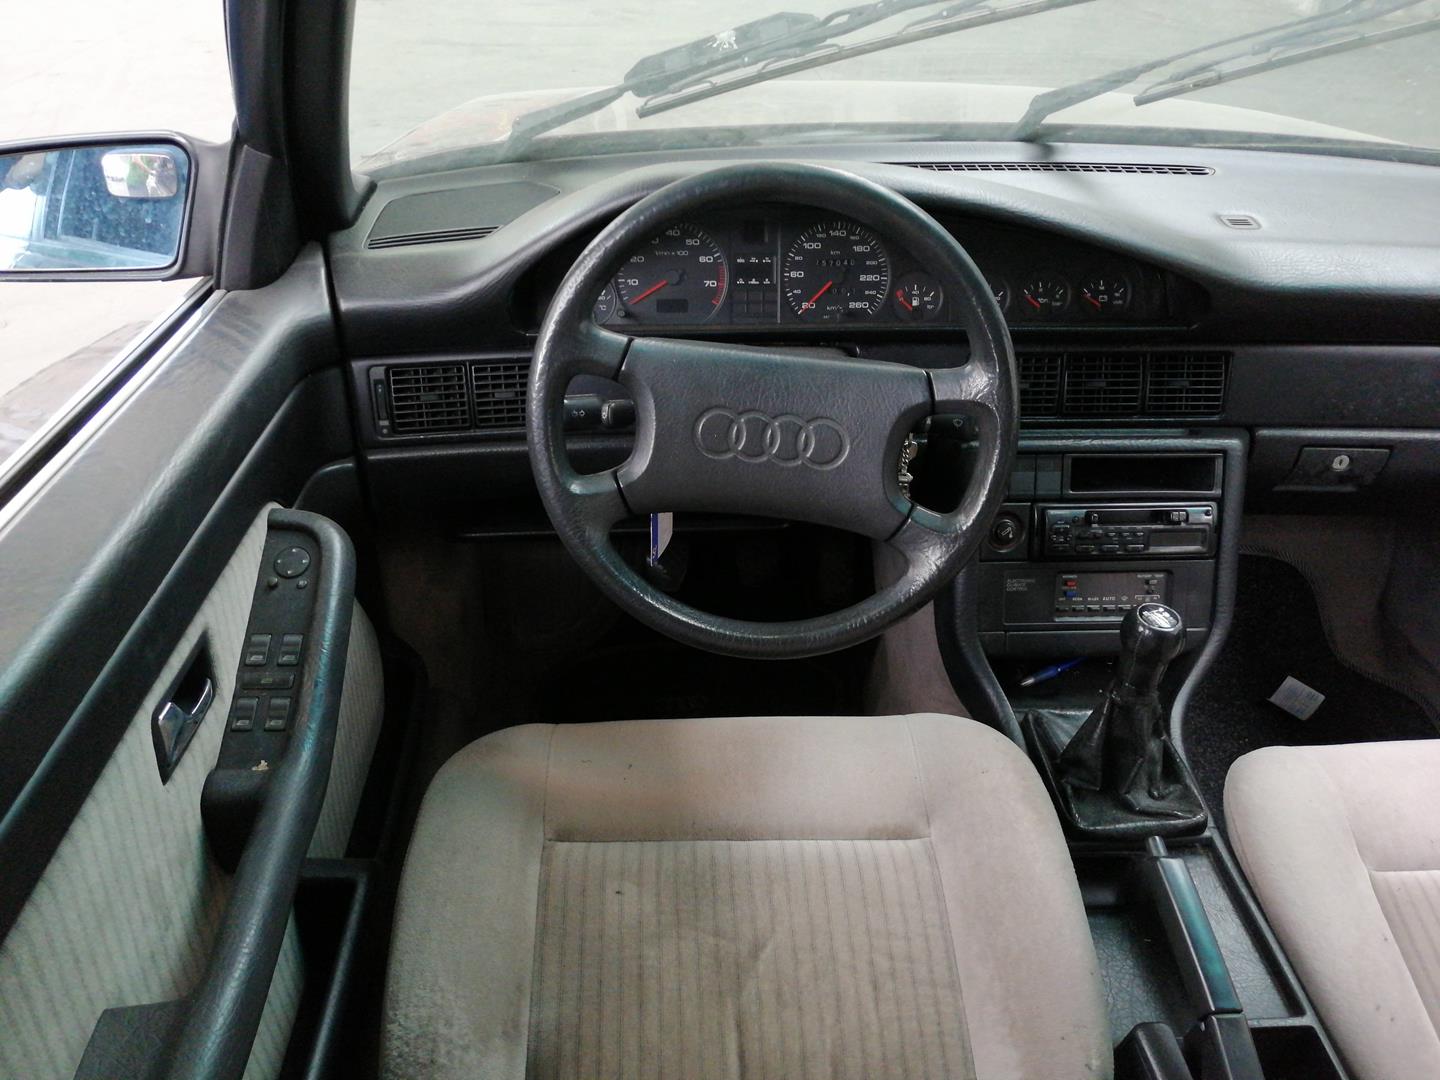 AUDI 100 S3 (1982-1990) Rear right door outer handle 893839206C, 4PUERTAS 21719062